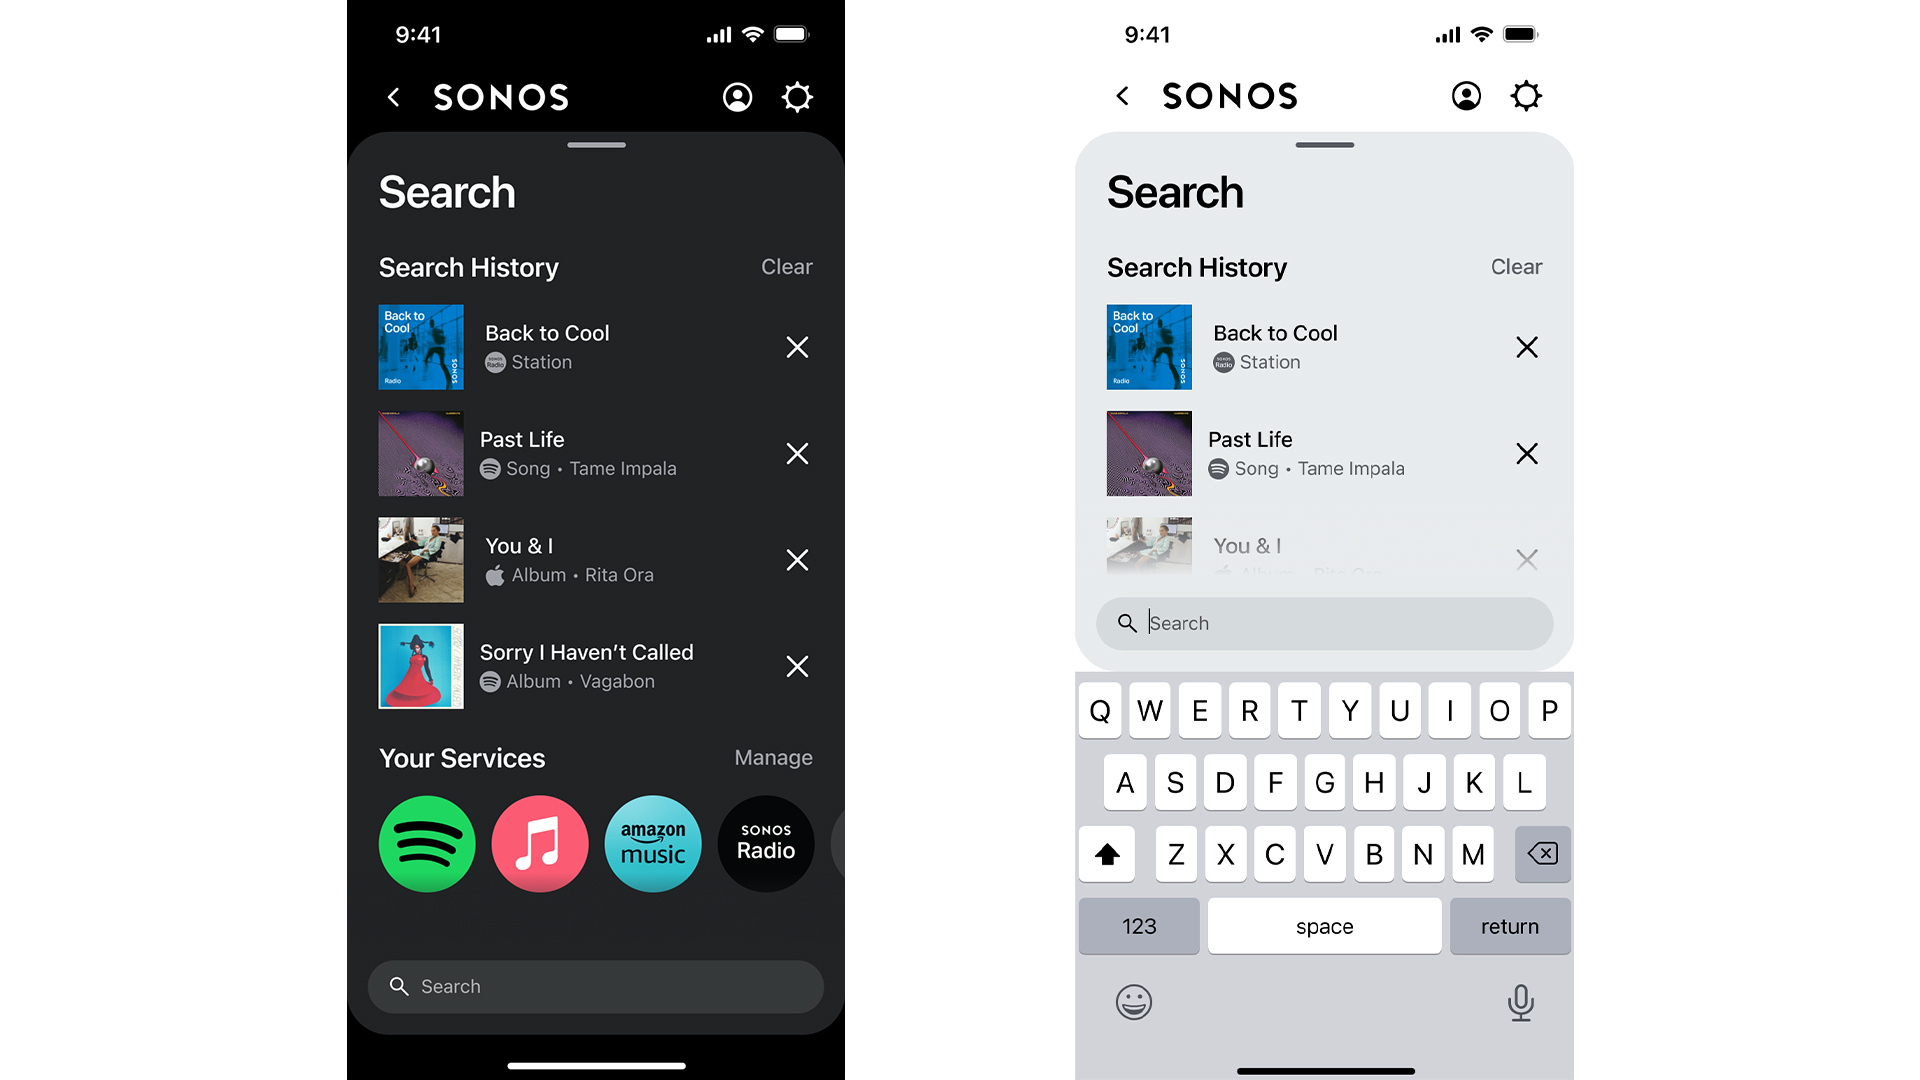 The новый экран поиска Sonos, показывающий предыдущие результаты, а новый экран поиска показывает живые результаты текущего поиска